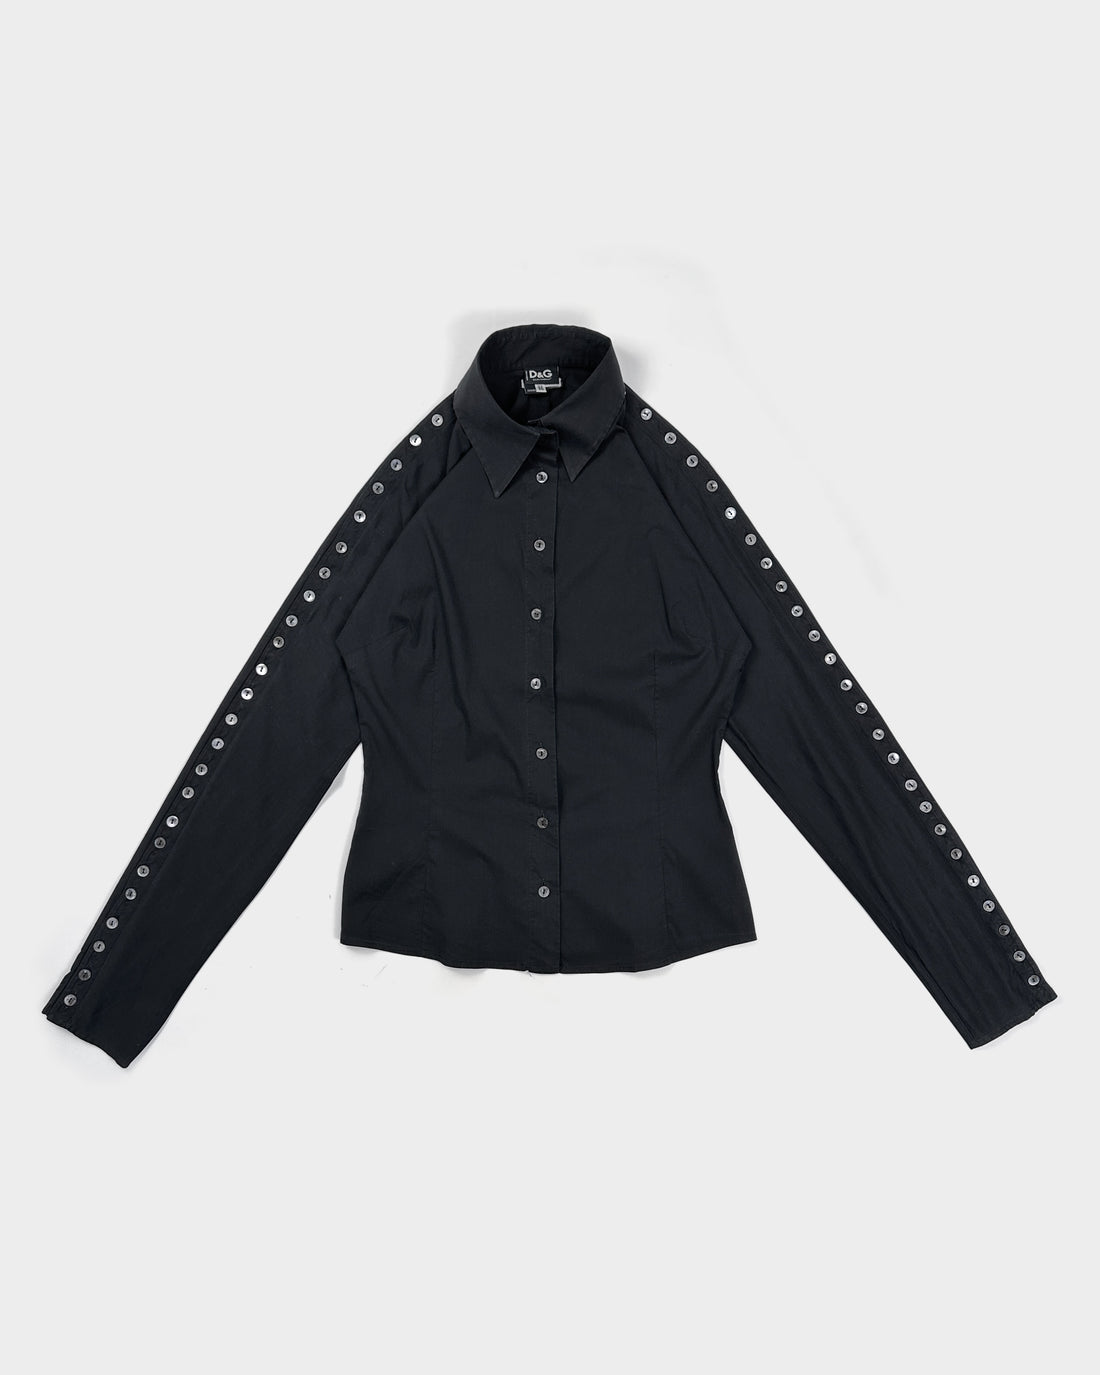 Dolce & Gabbana 60 Buttons Black Shirt 2000's